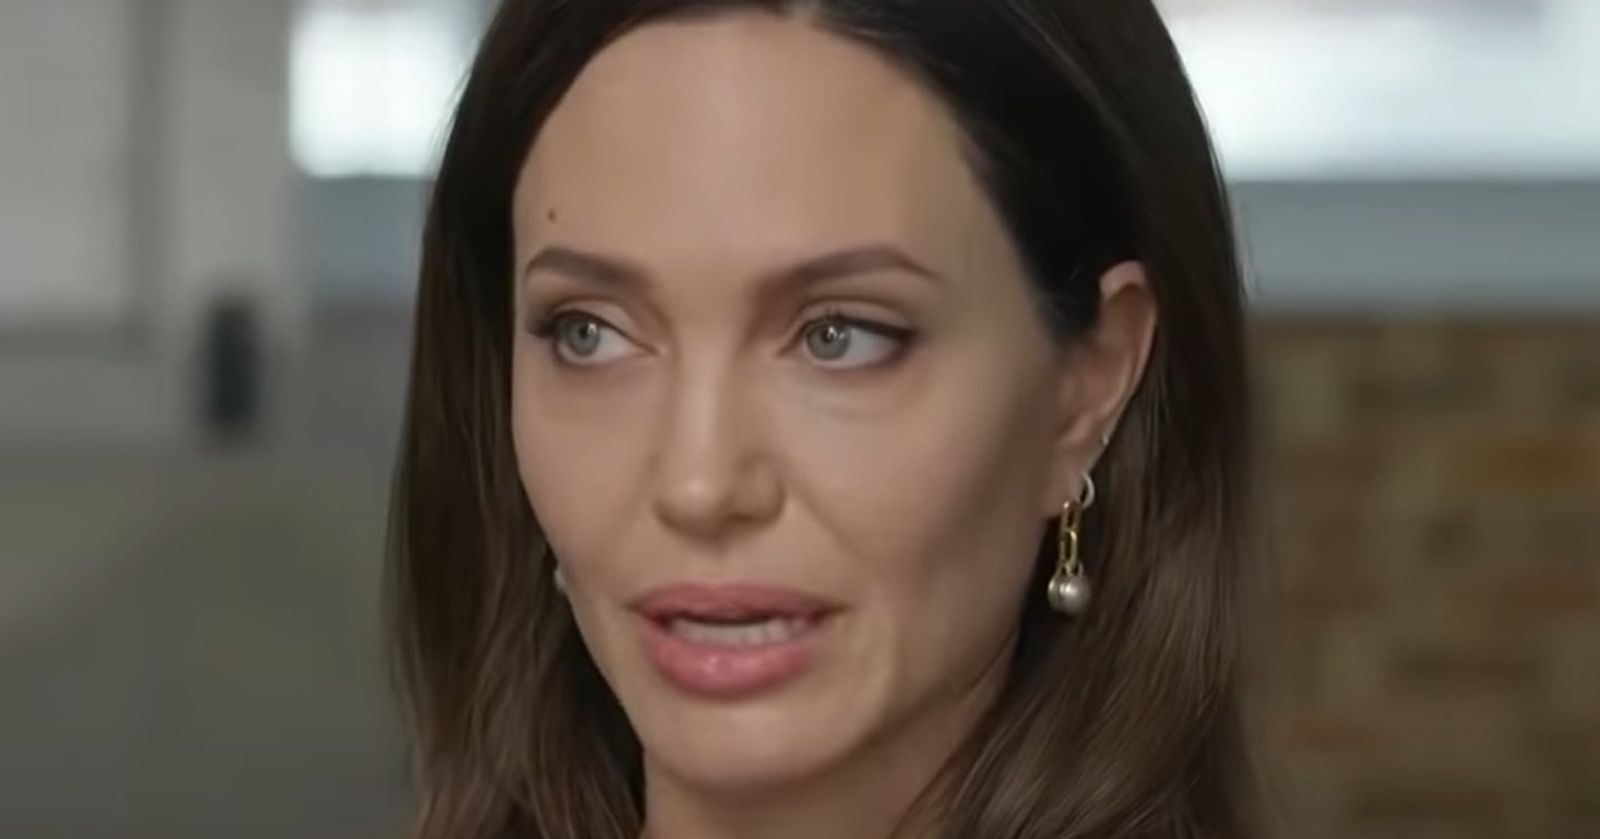 Angelina Jolie Takes Daughter Vivienne to Meet Dear Evan Hansen Cast